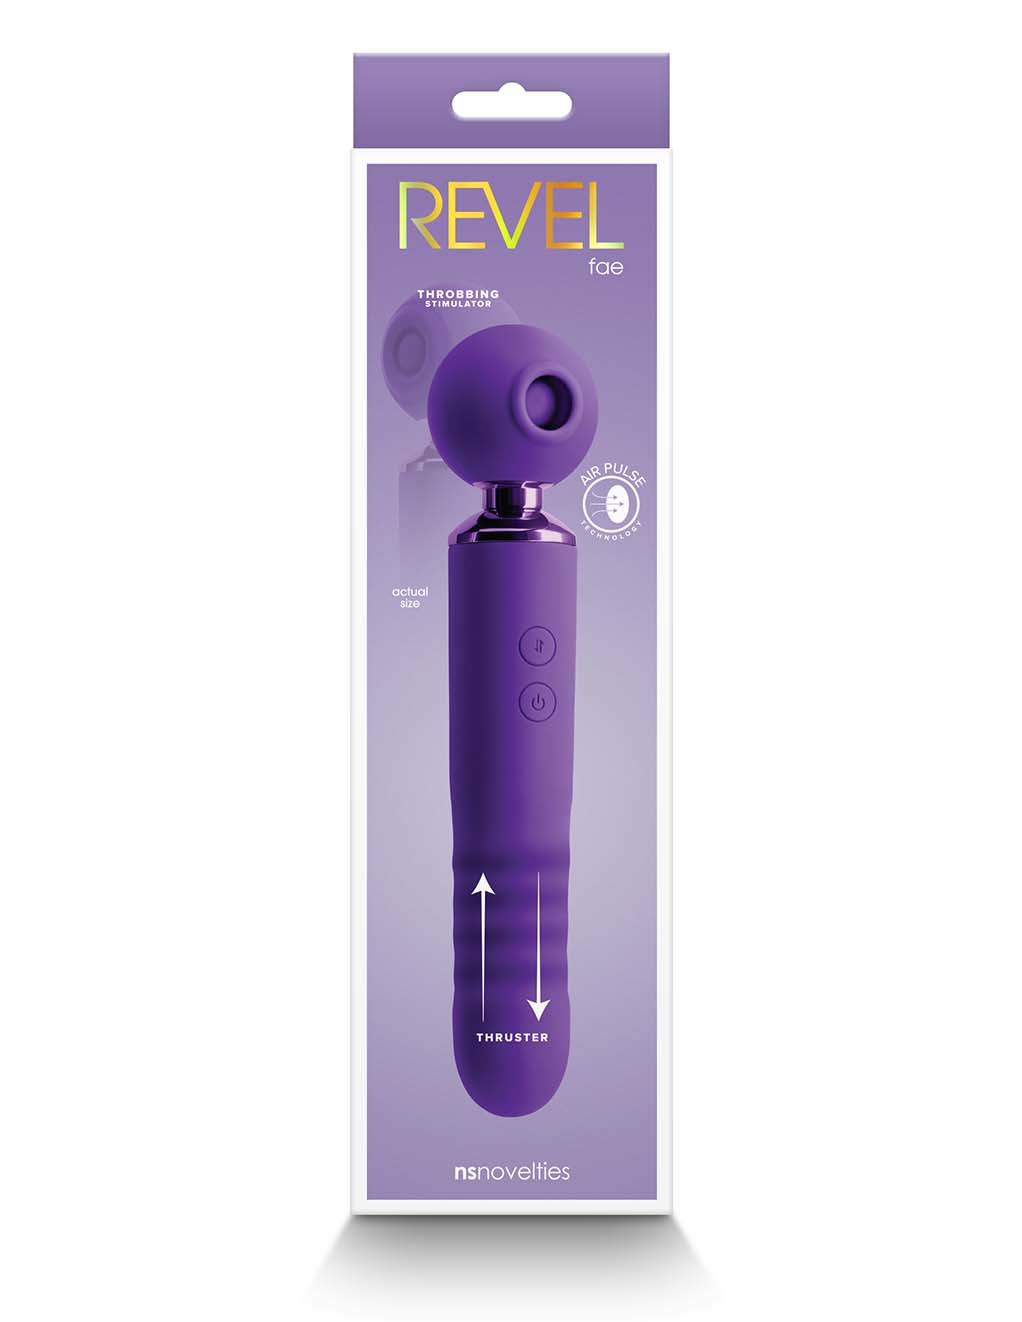 Revel Fae- Purple box back